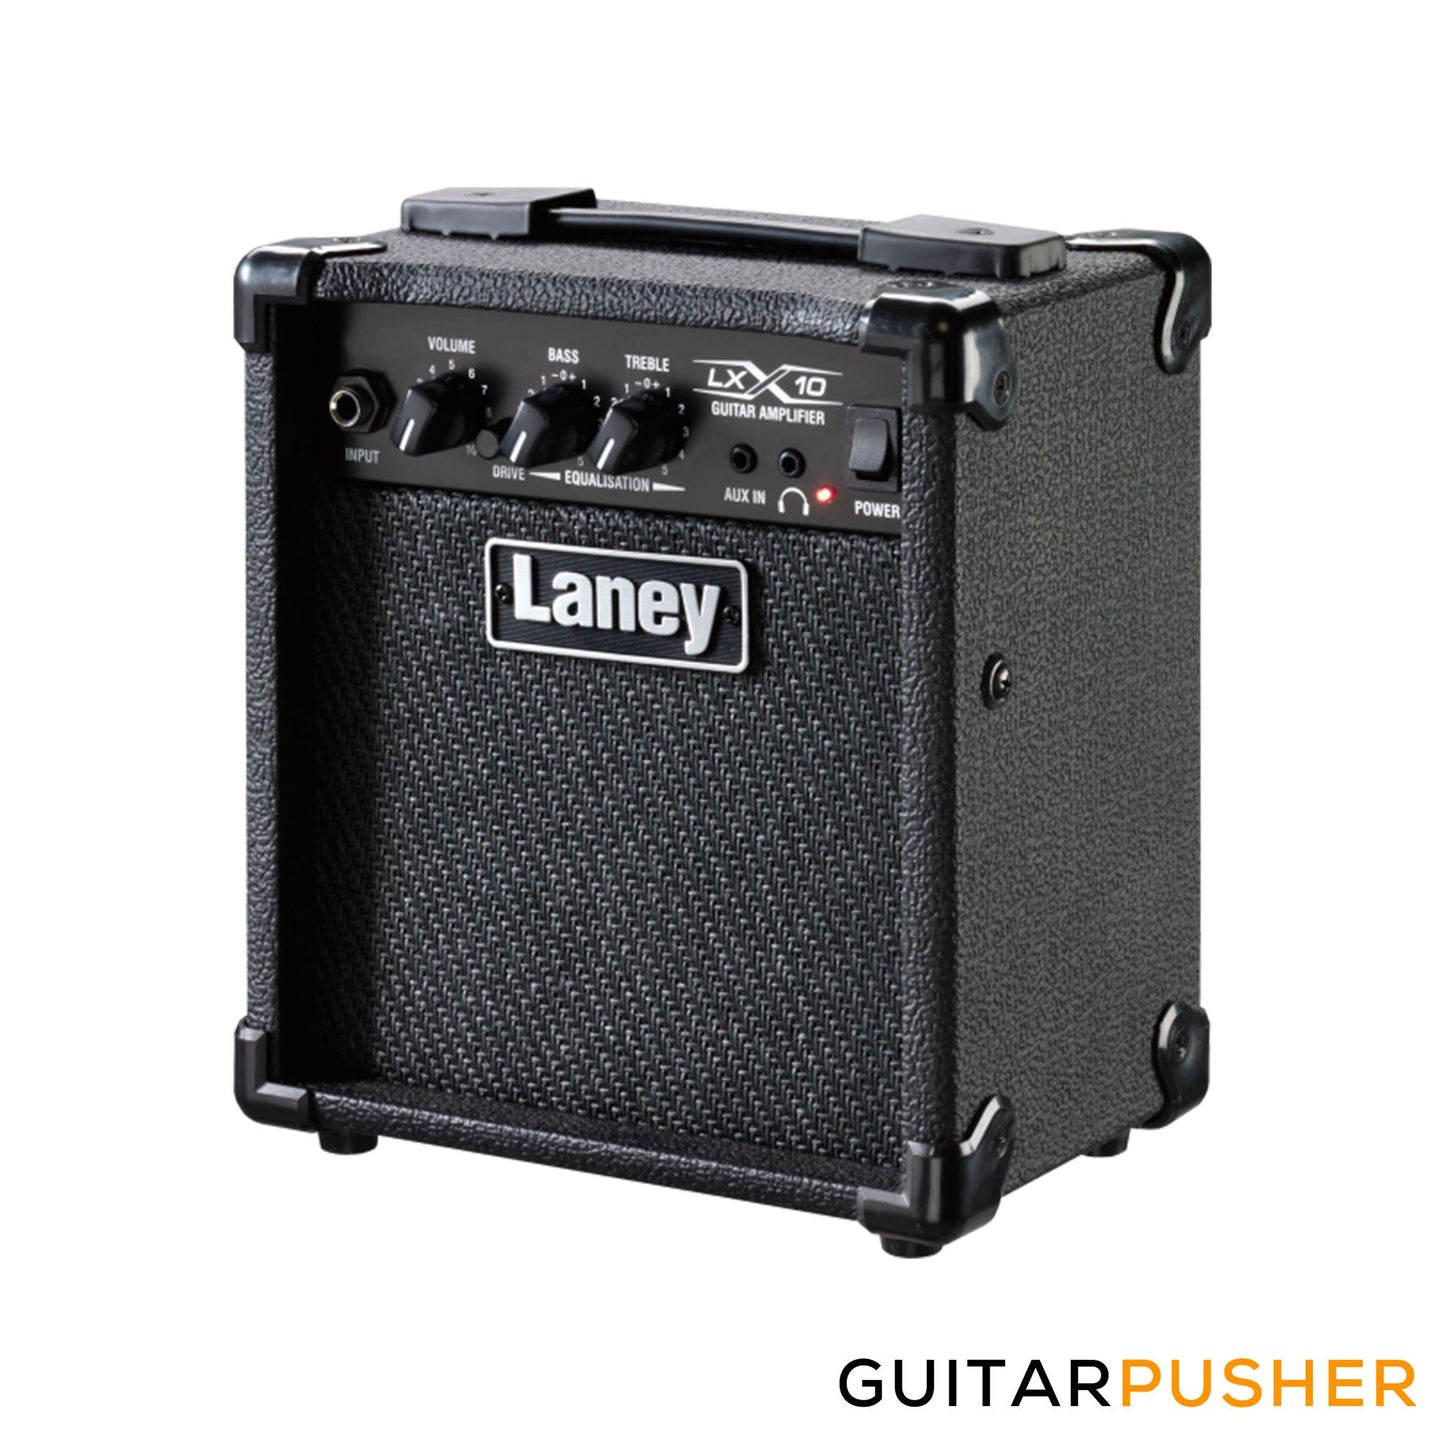 LANEY LX10 10-Watt Portable Combo Amplifier w/ 5" Driver - Black